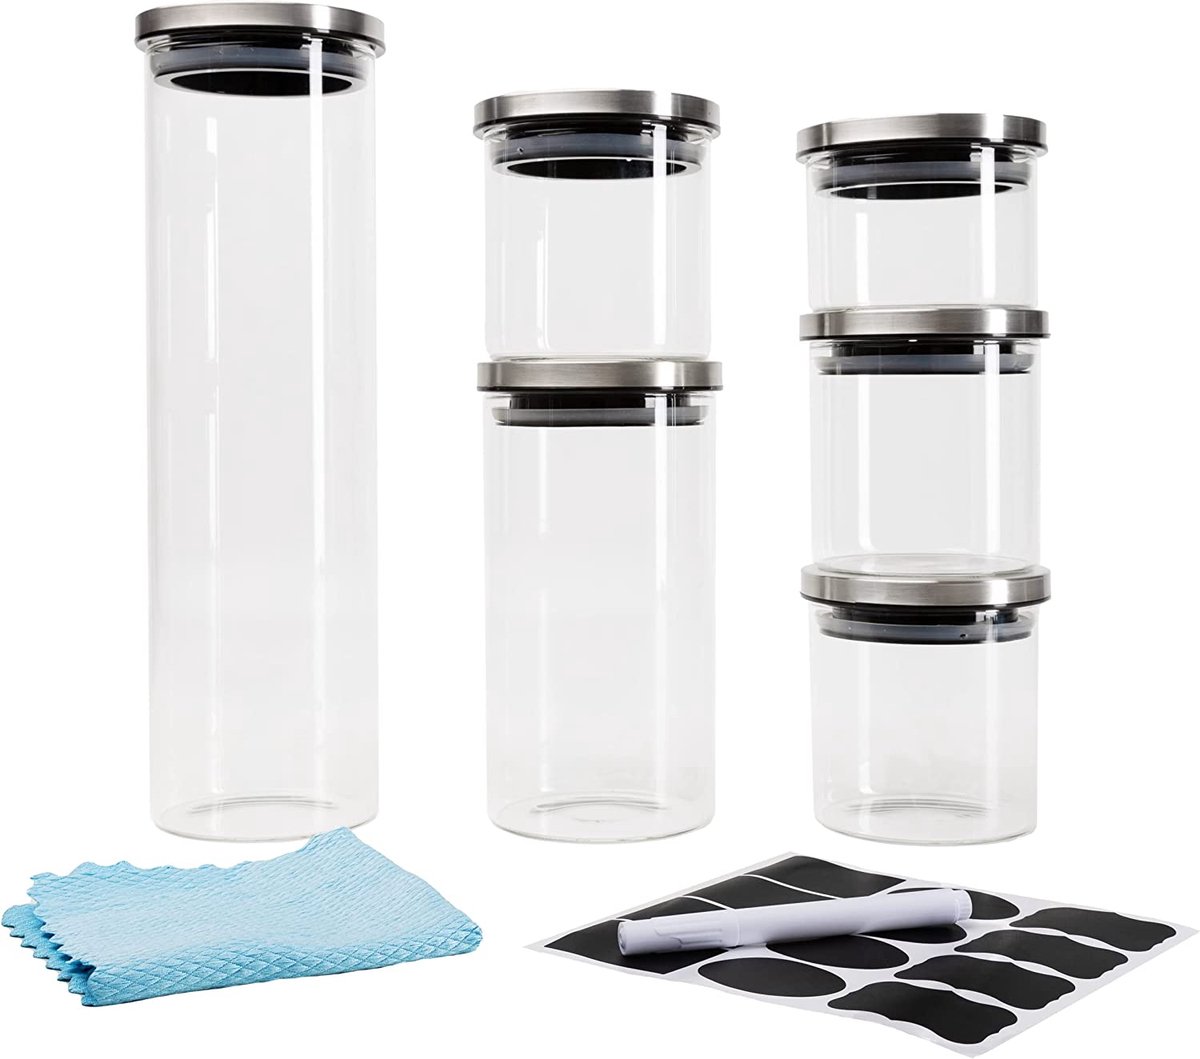 Voorraadpotten met deksel van borosilicaatglas voor luchtdichte opslag, inclusief etiketten, stift en microvezeldoek (1 x 2000 ml + 1 x 1100 ml + 2 x 500 ml + 2 x 250 ml)